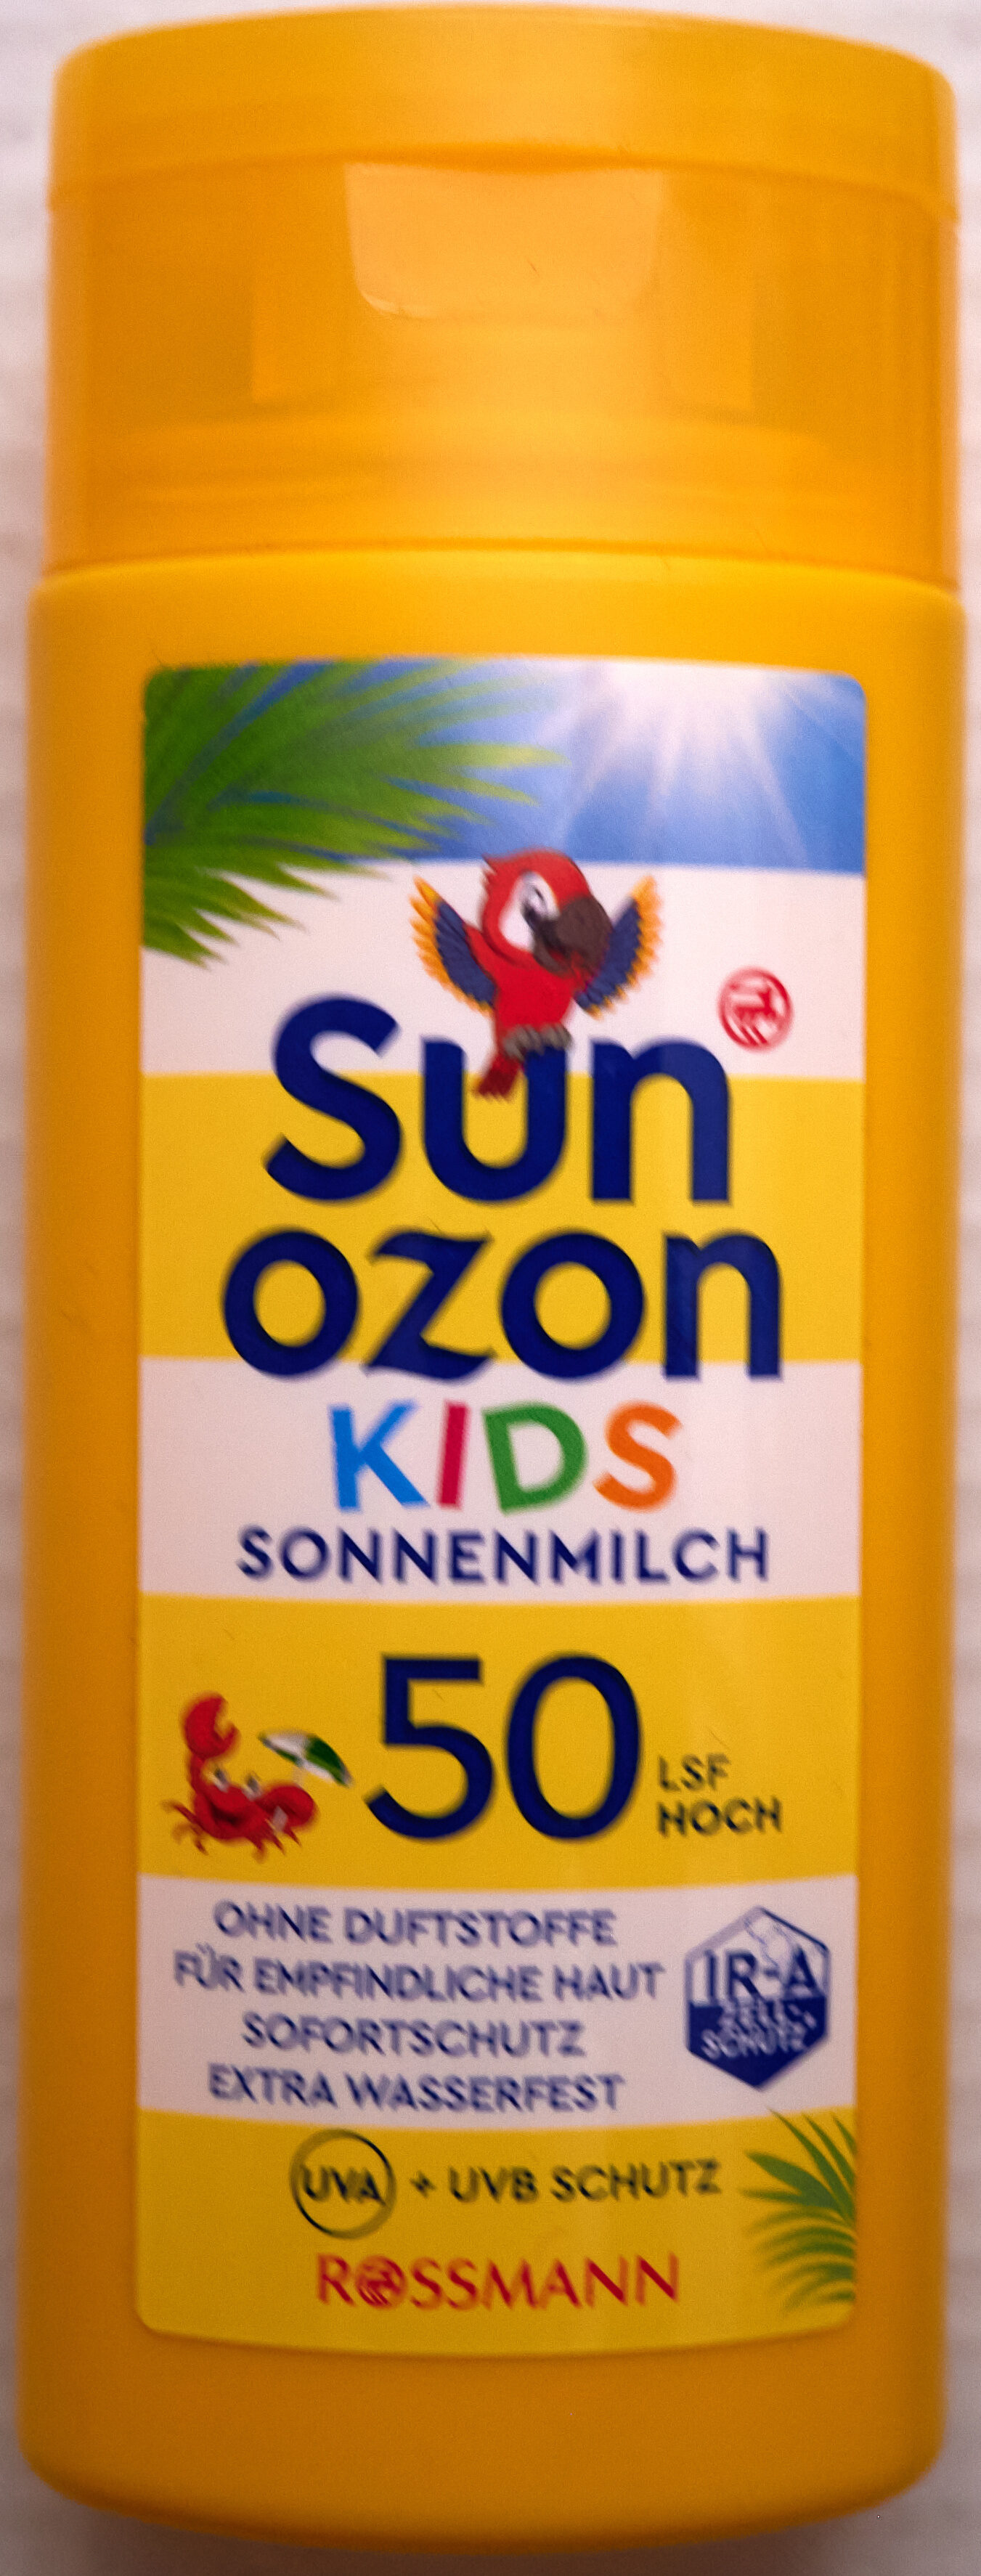 Kids Sonnenmilch LSF 50 hoch - Produkt - de